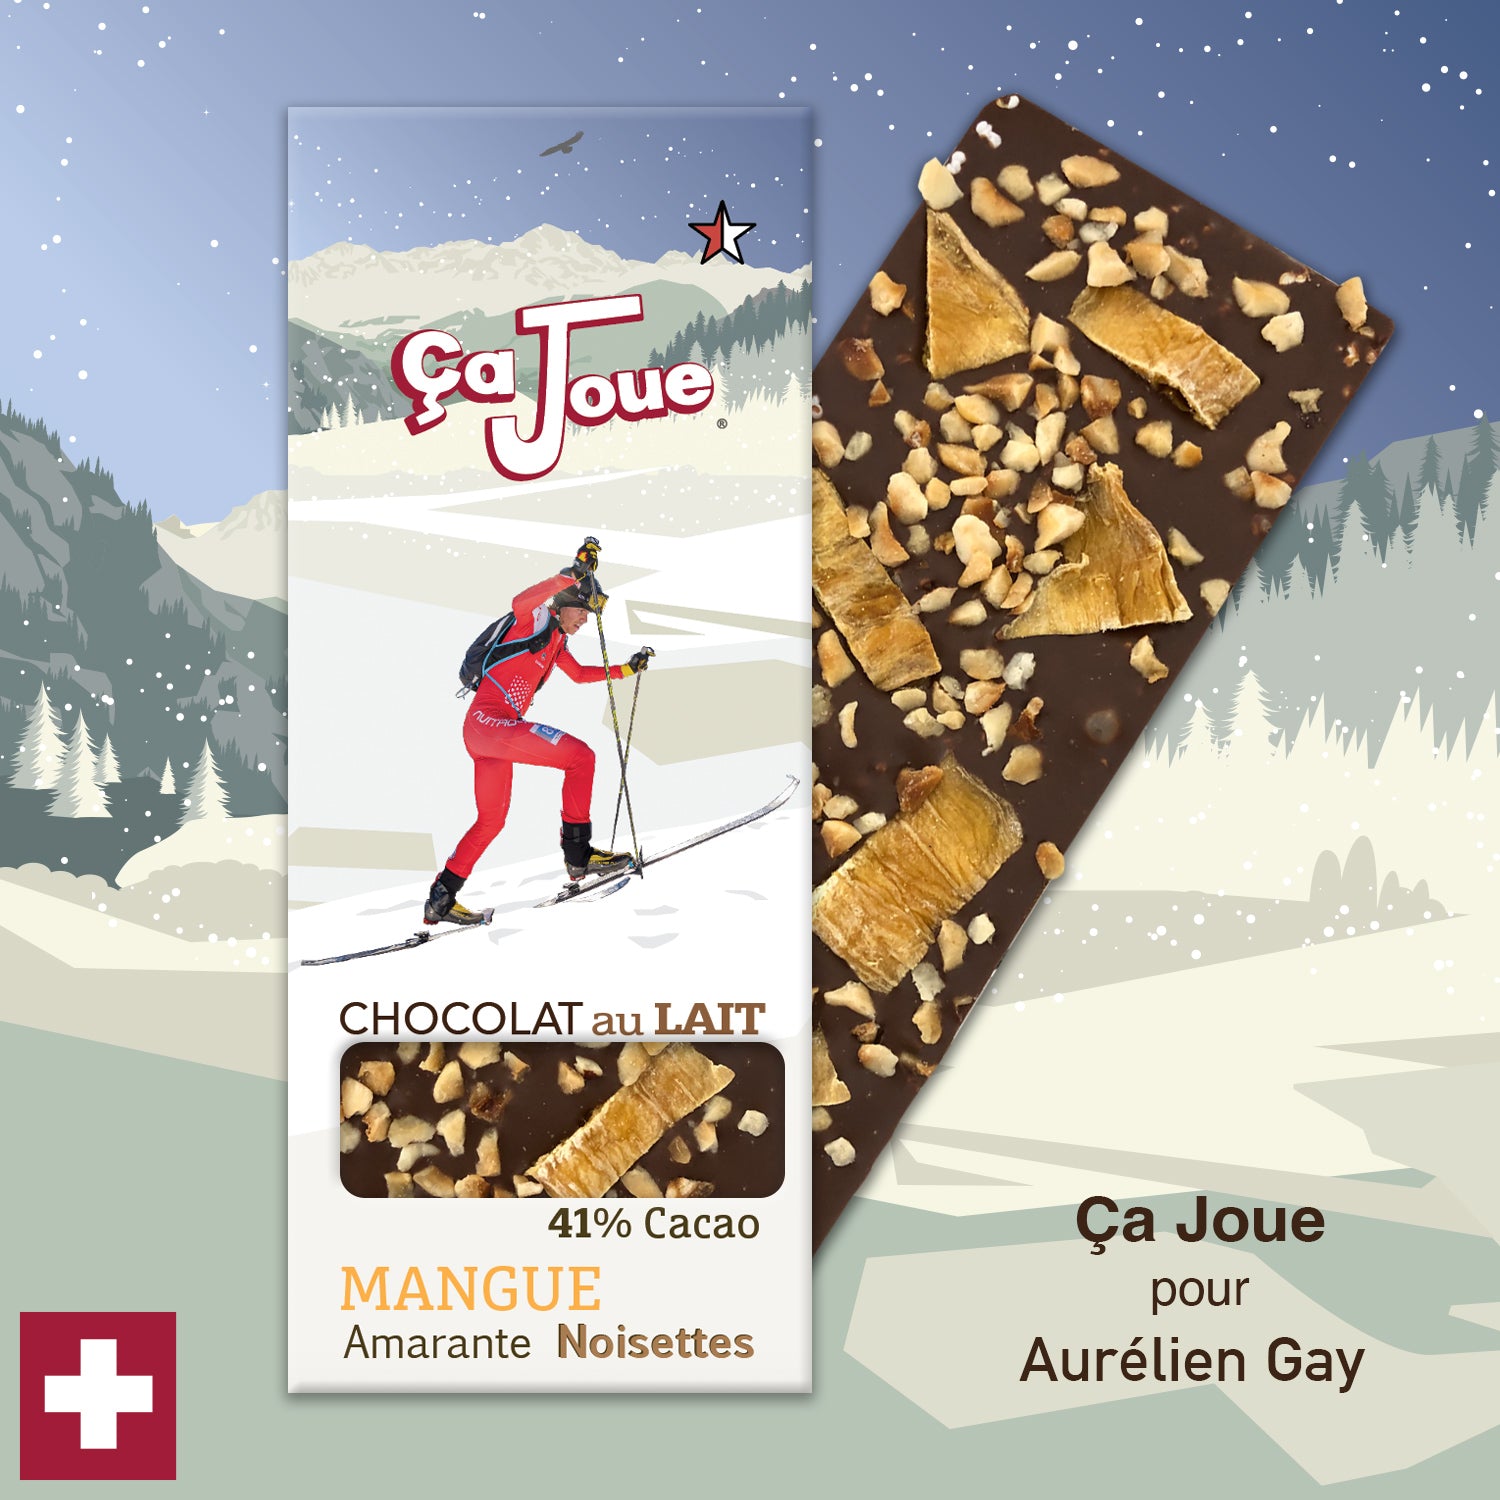 Ça Joue for Aurélien Gay (Ref-BL2) Milk Chocolate from Val de Bagnes